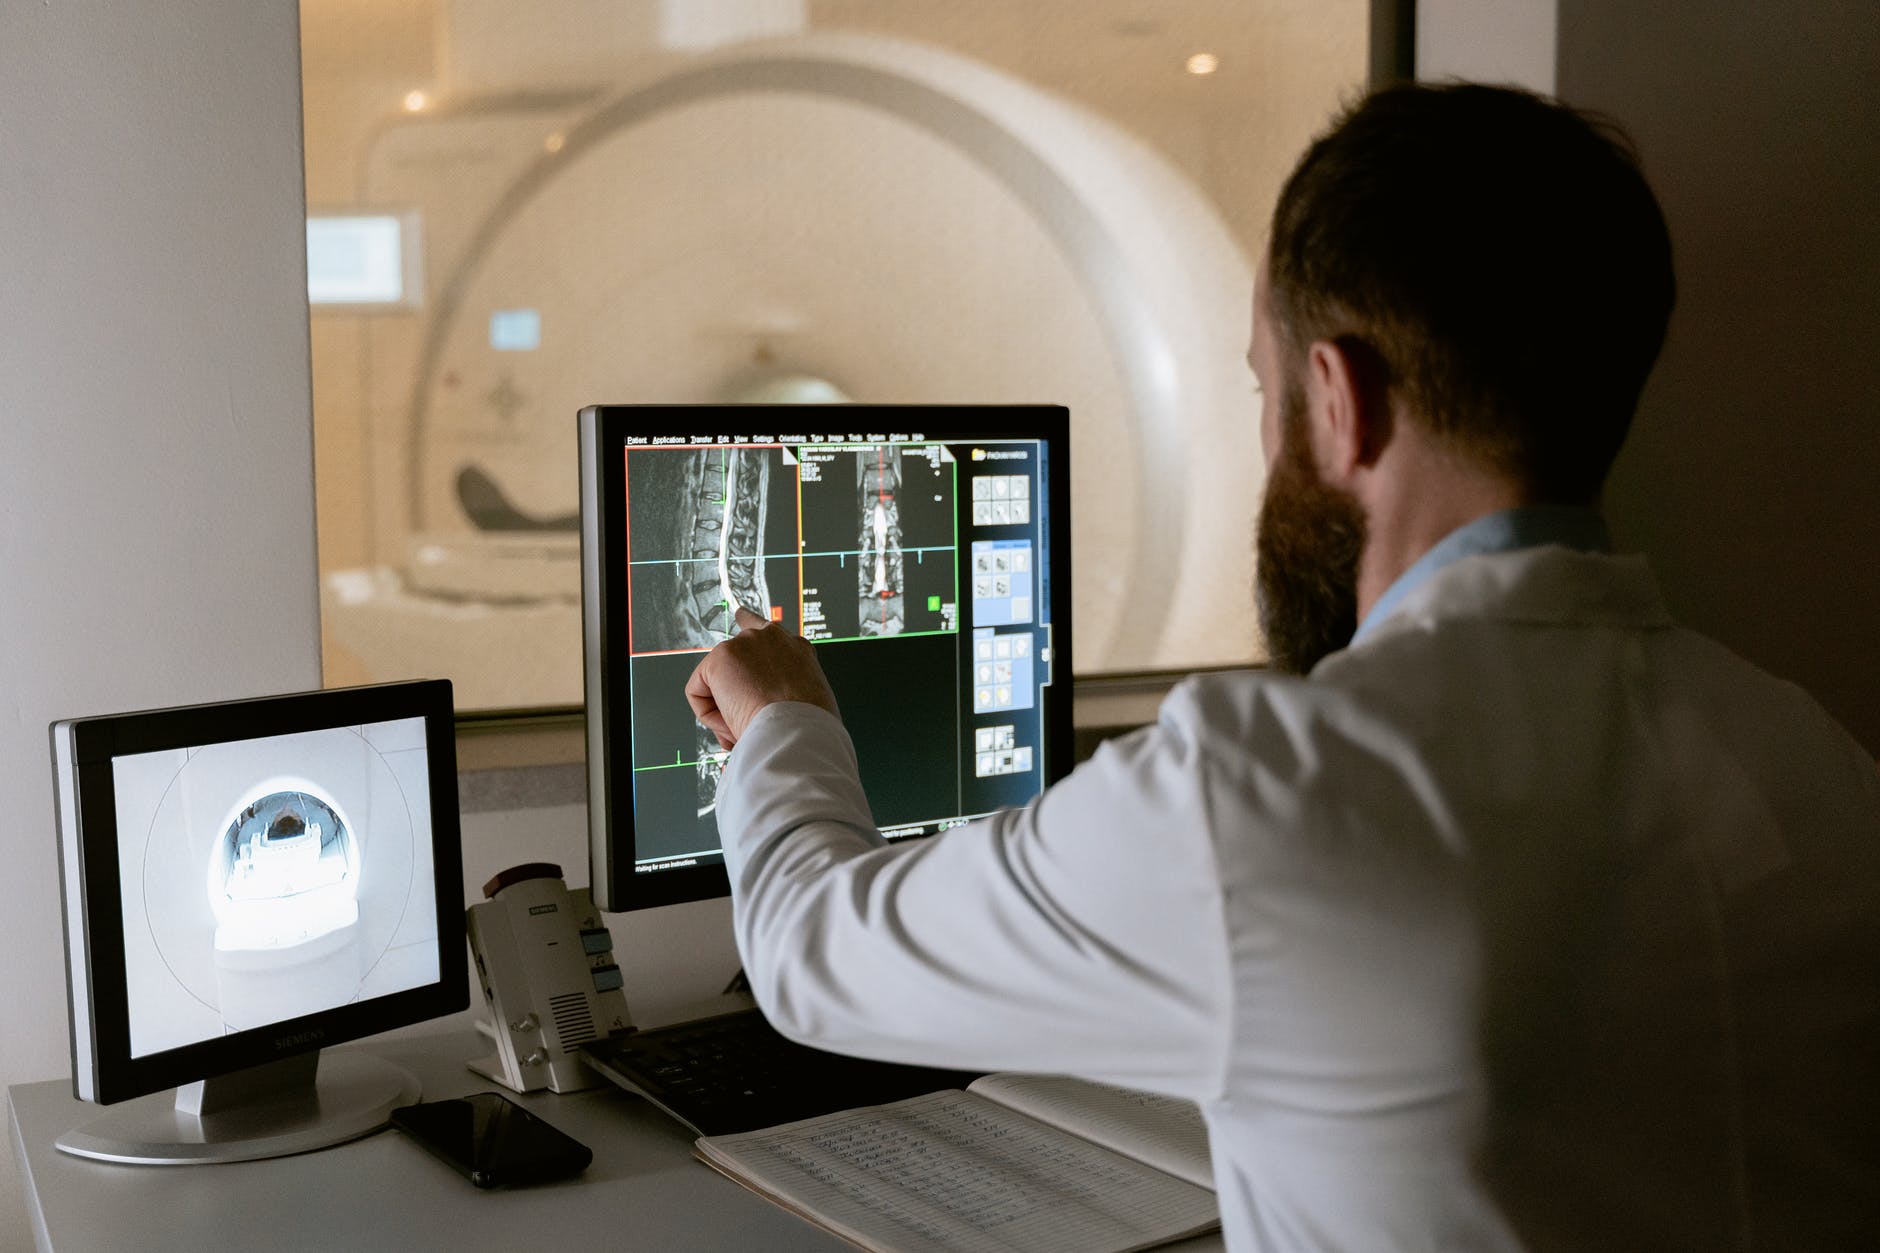 læge læser CT-scanning af lændehvirvelsøjlen